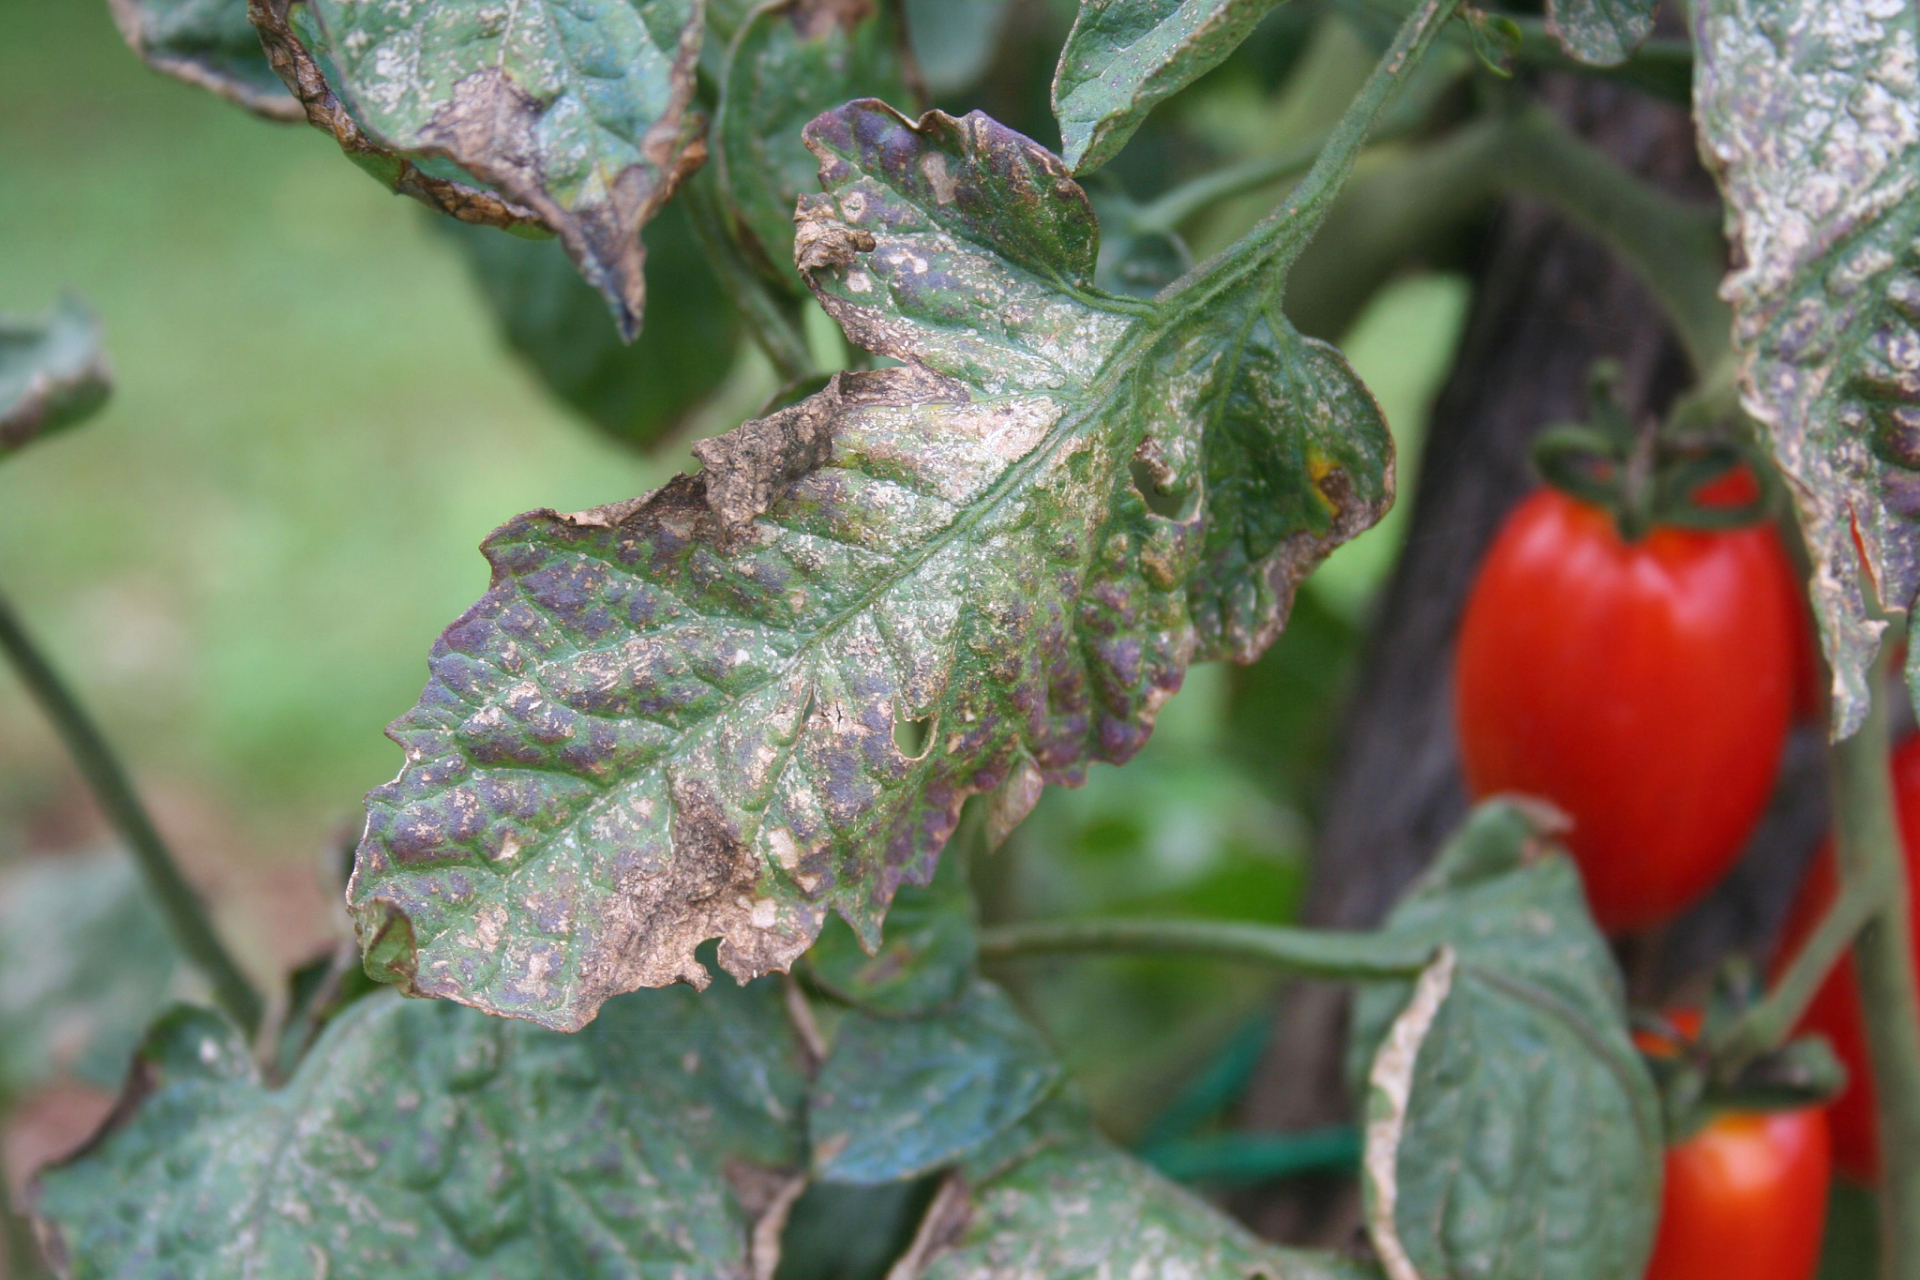 西红柿叶子发黄开始枯萎可能由以下原因造成:  115